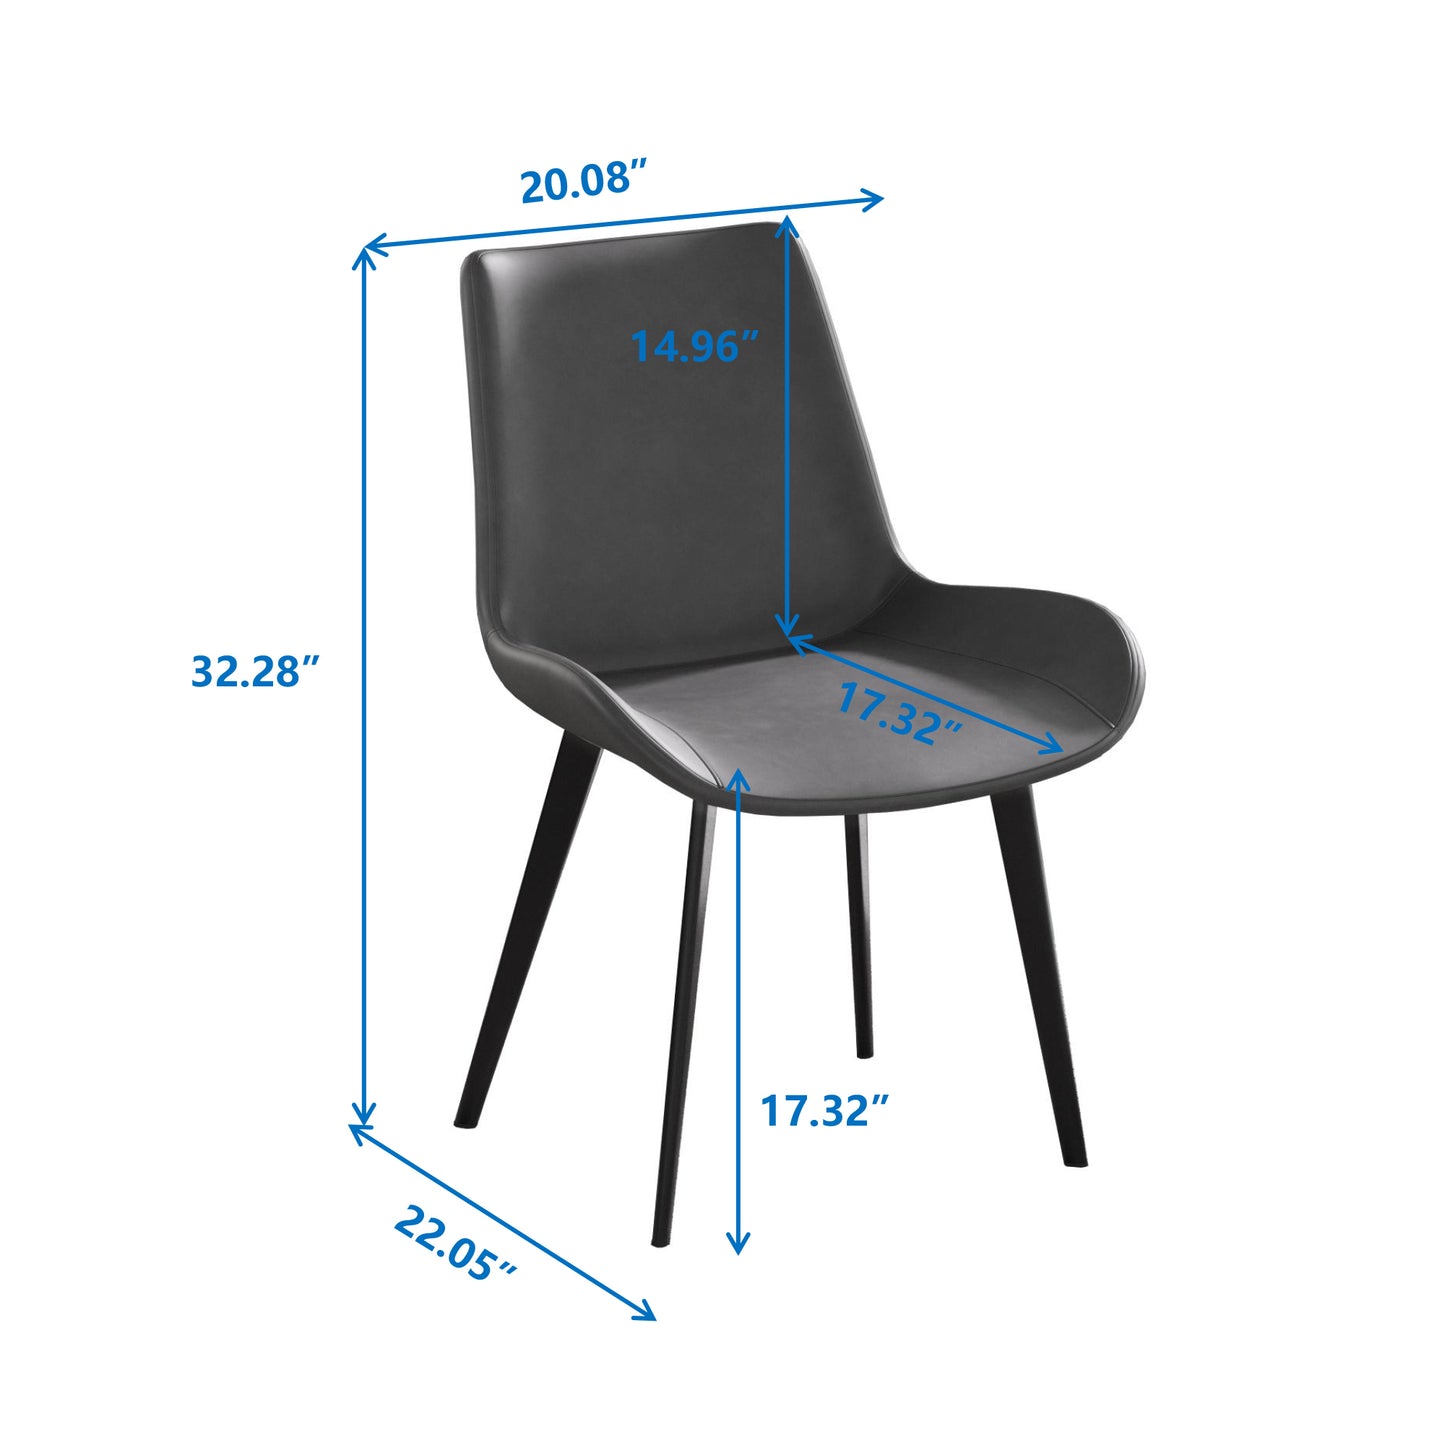 Modern Dining Chair Living Room Black Metal Leg Dining Chair-Grey-2pcs/ctn